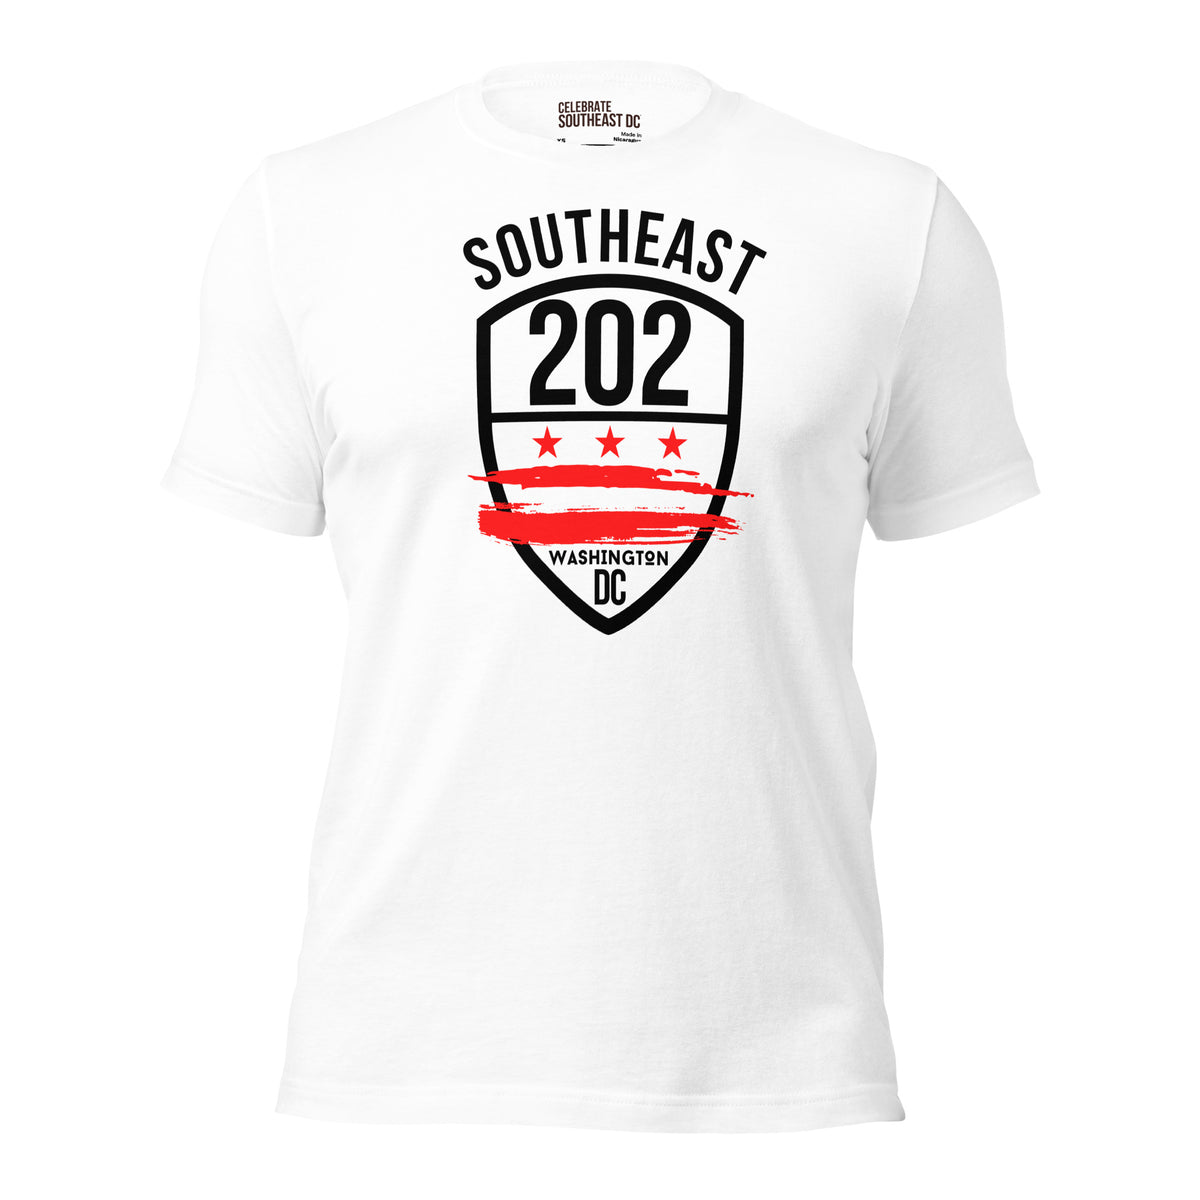 'SOUTHEAST WASHINGTON DC/202' (Emblem Front Only) -White Unisex Short Sleeve Unisex T-shirt